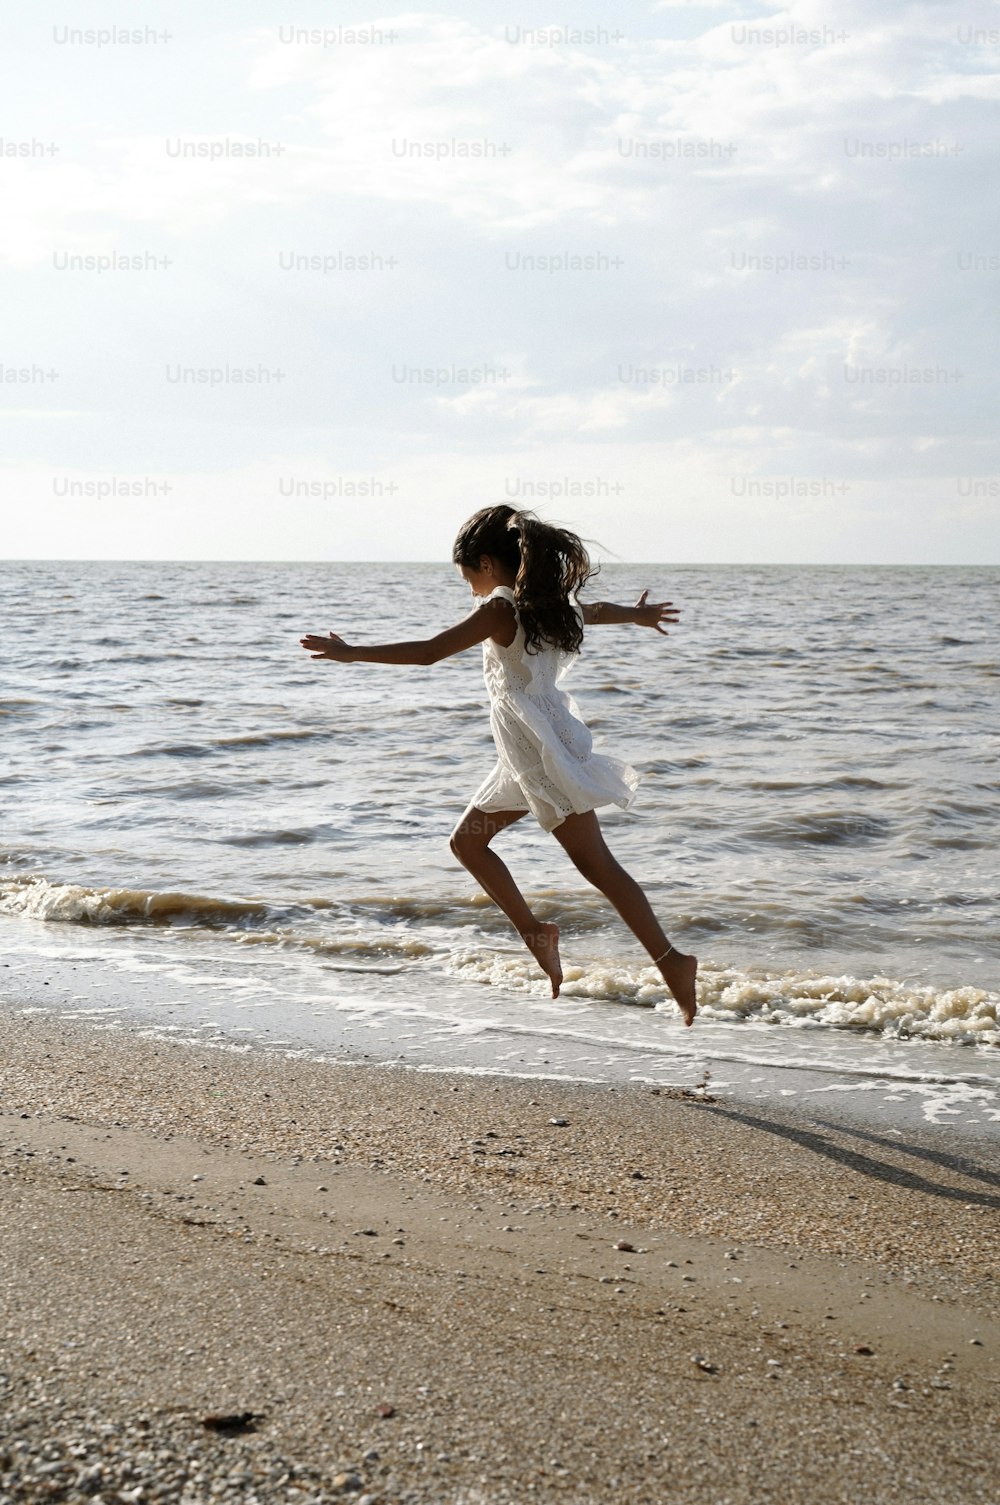 una bambina che salta in aria su una spiaggia